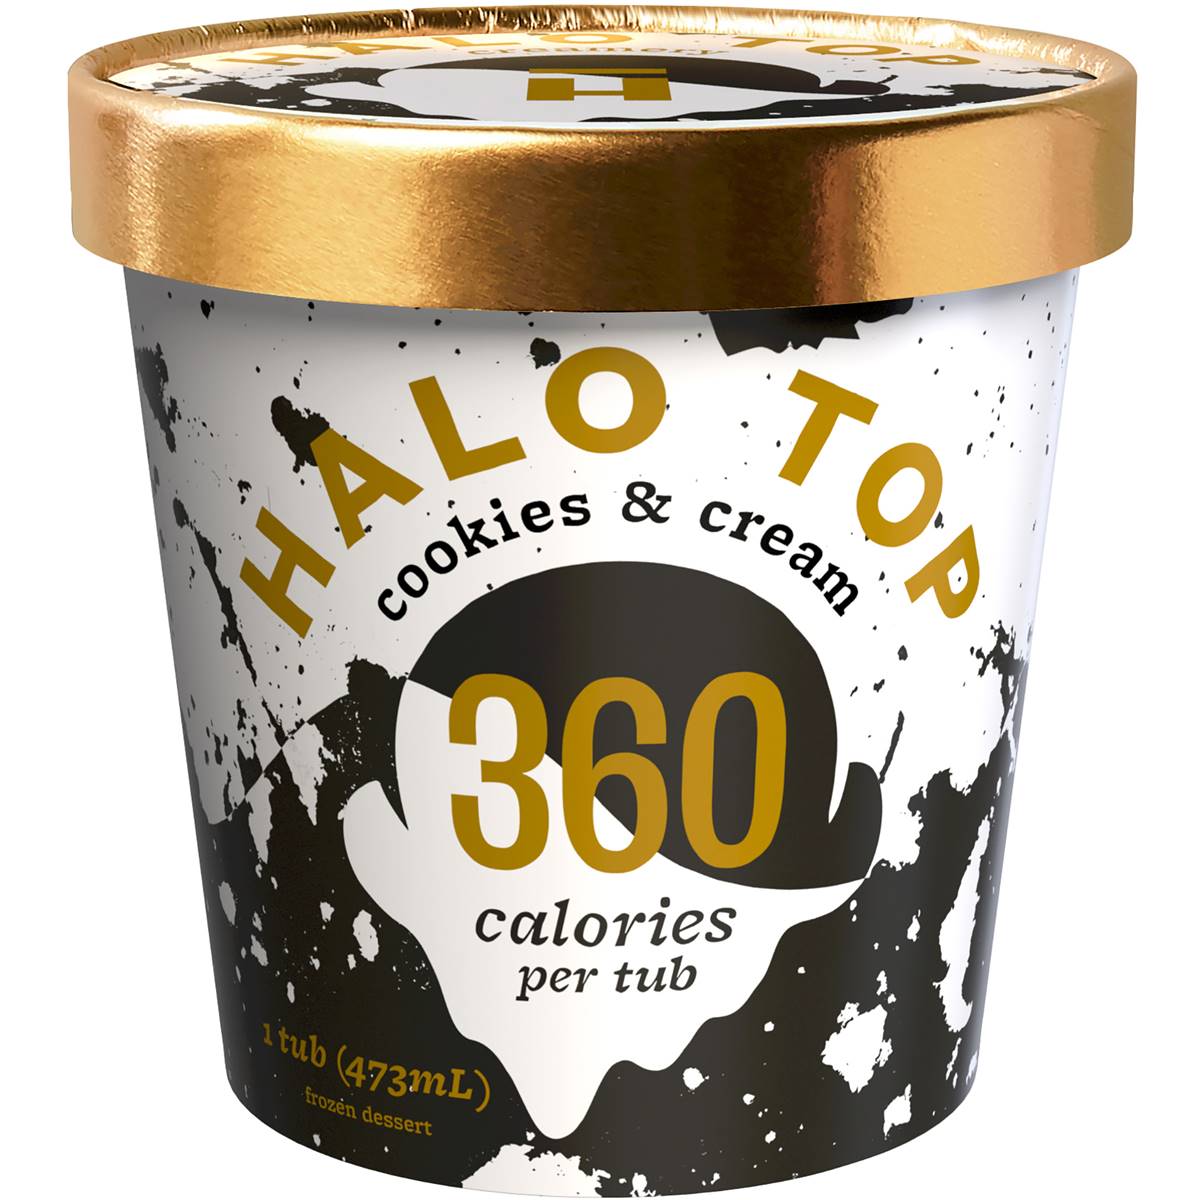 Calories in Halo Top Cookies & Cream Frozen Dessert Tub